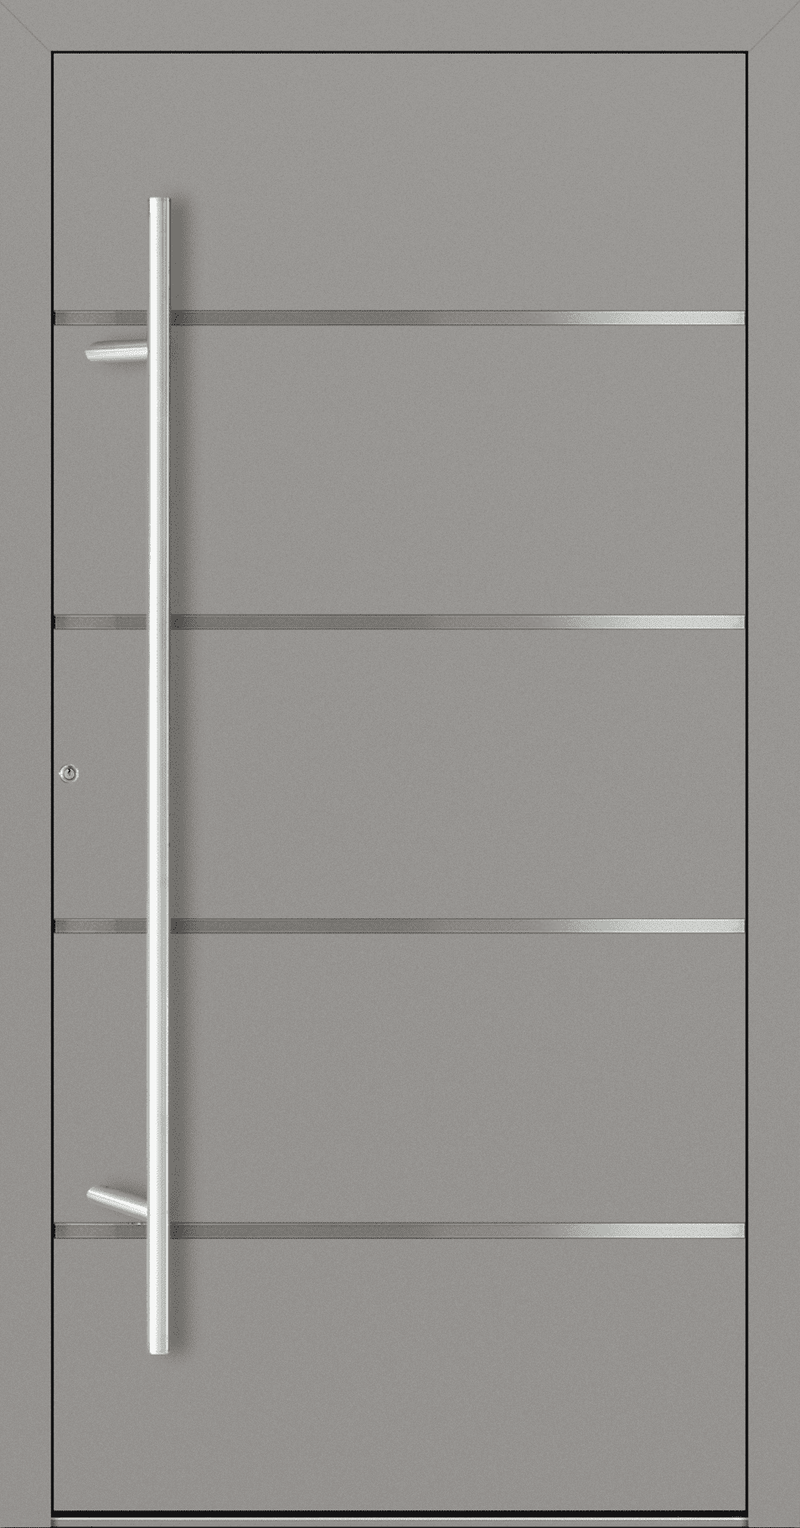 Turenwerke SL75 Design 02 Aluminium Door - Grey White